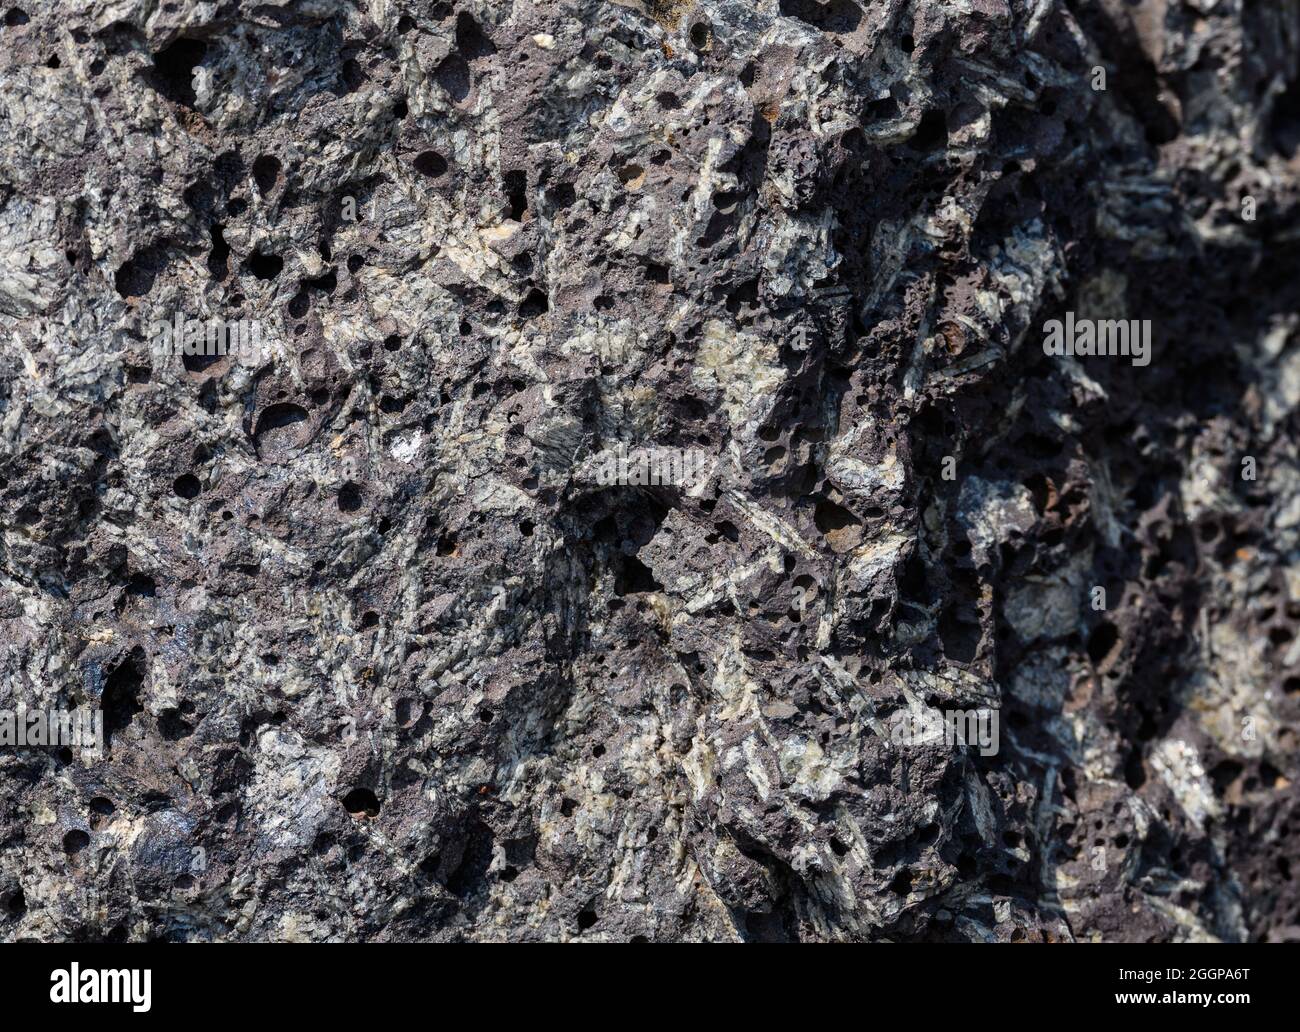 Rocce porfiriche ignee con grandi cristalli di feldspare. Oregon, Stati Uniti. Foto Stock